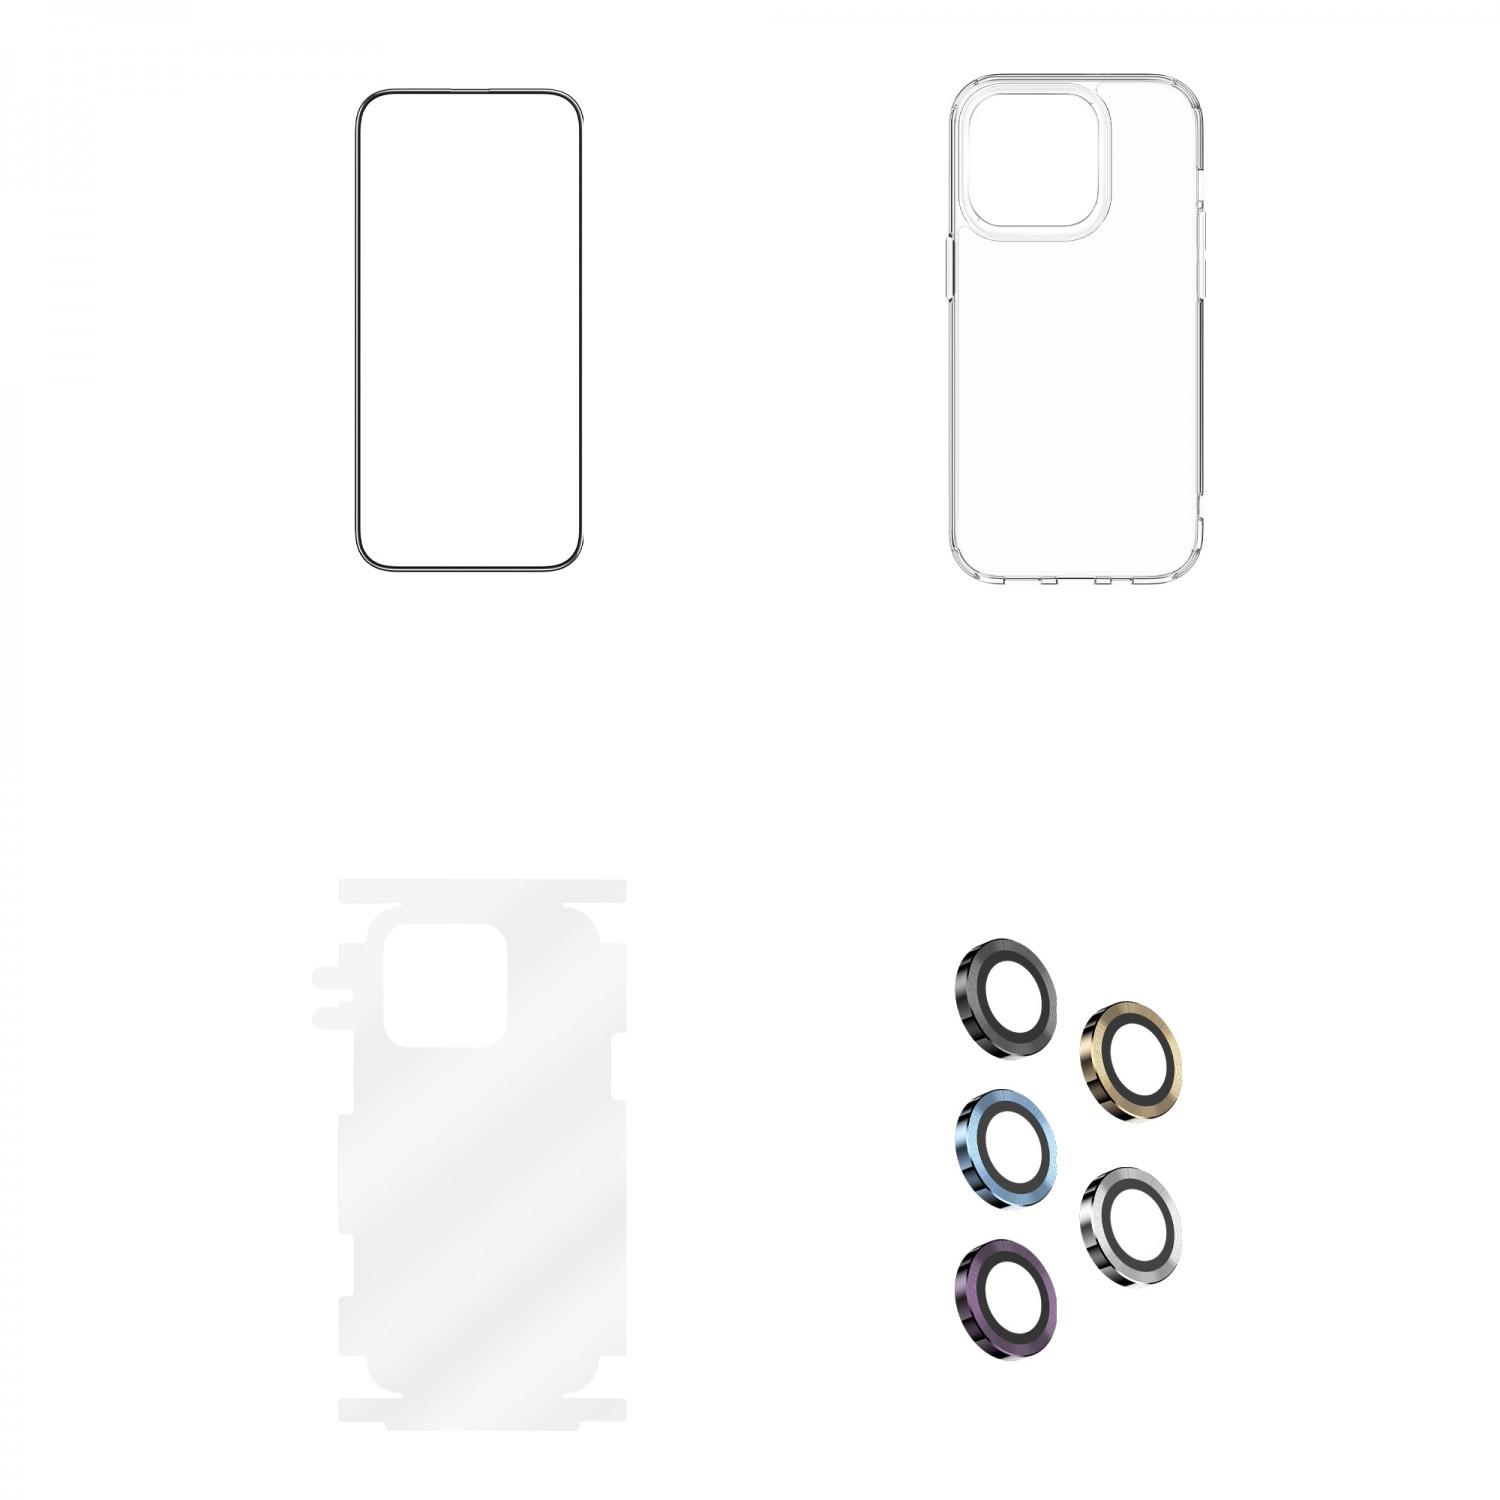 بكج حماية ايفون 14 برو ماكس أسود جرين Green 4 in 1 360° HD Protection Pack for iPhone 14 Pro Max Black - cG9zdDoxMzc3MzU4